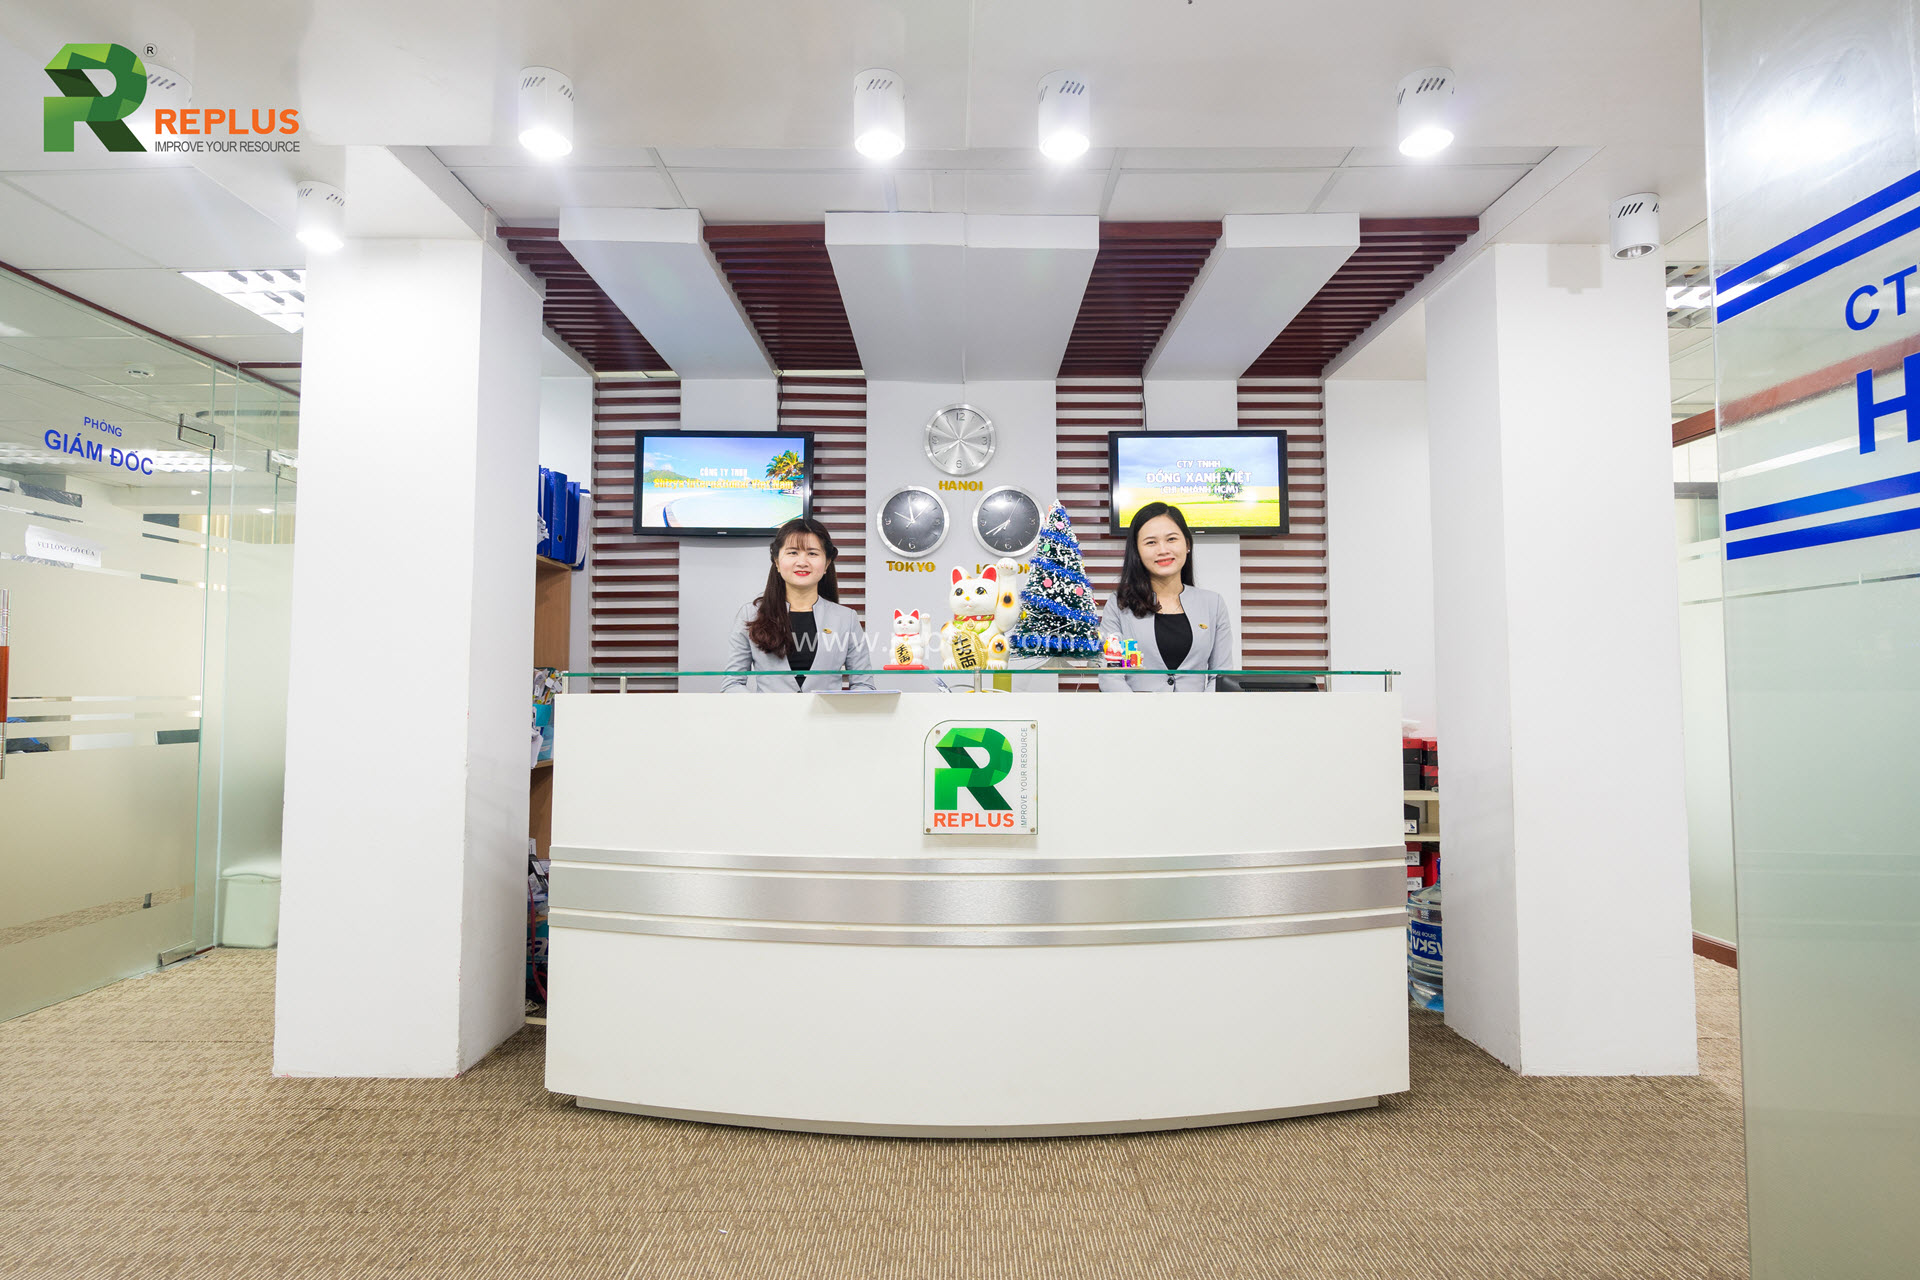 Replus trở thành thương hiệu hàng đầu về dịch vụ văn phòng tại Việt Nam và khu vực ASEAN.eplus